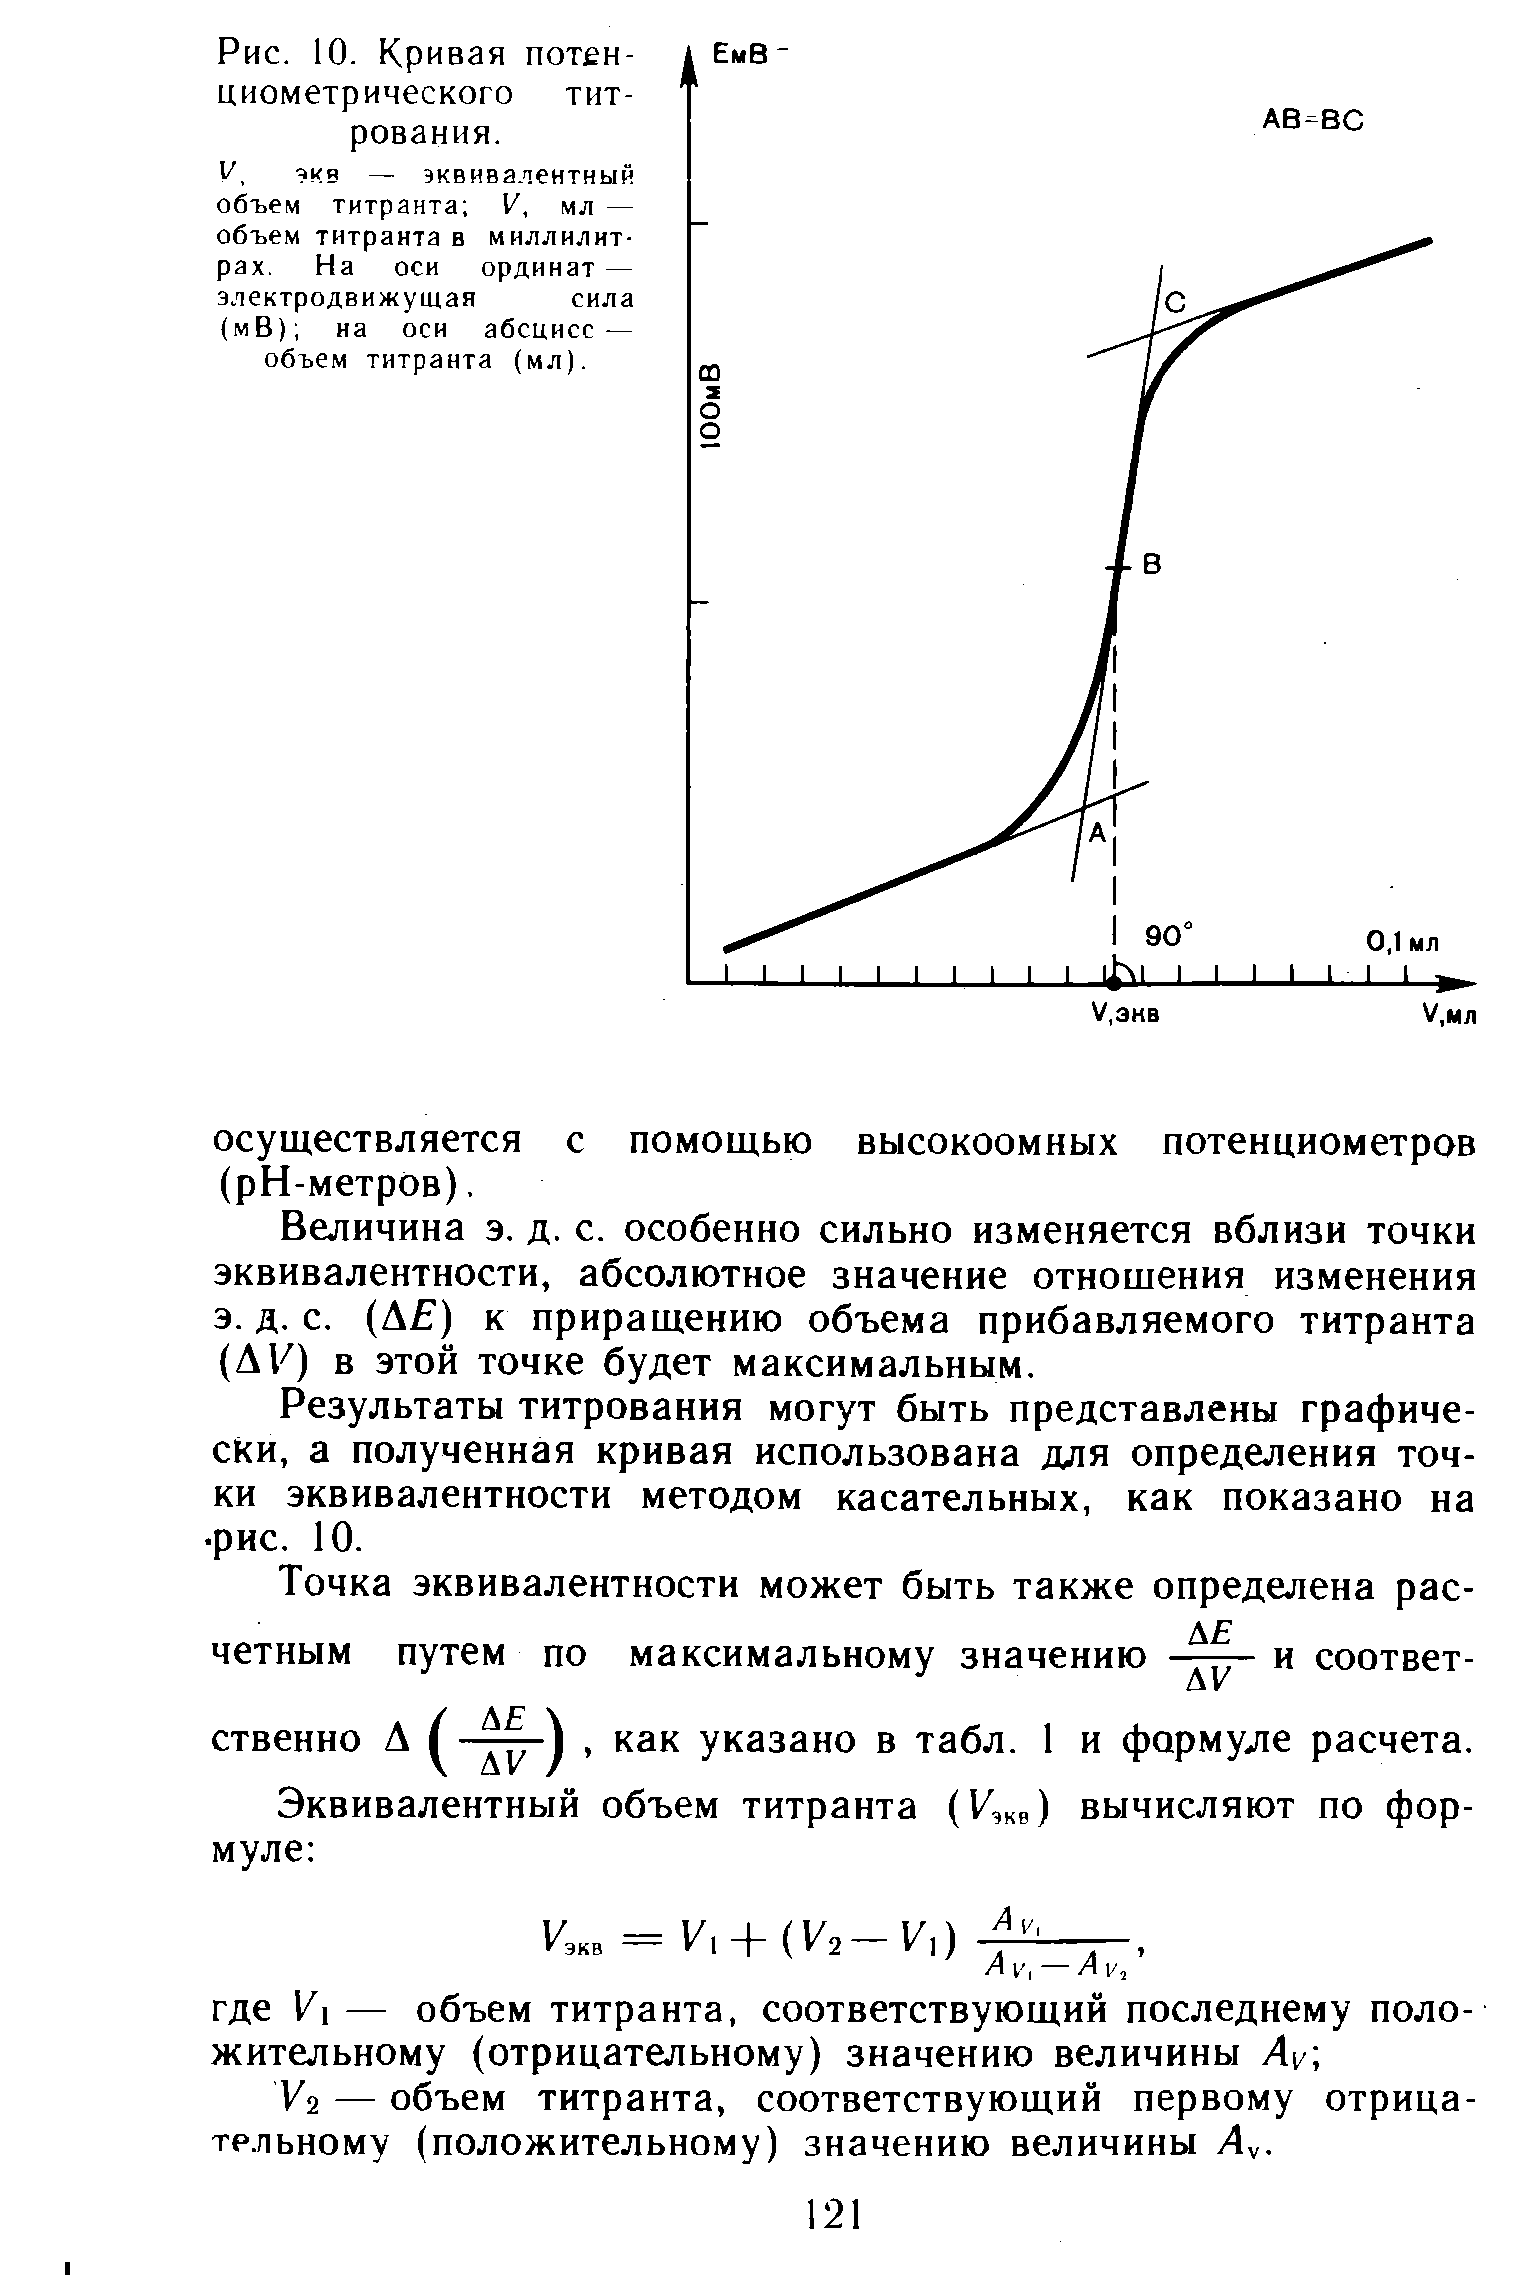 Результаты титрования могут быть представлены графически, а полученная кривая использована для определения точки эквивалентности методом касательных, как показано на рис. 10.